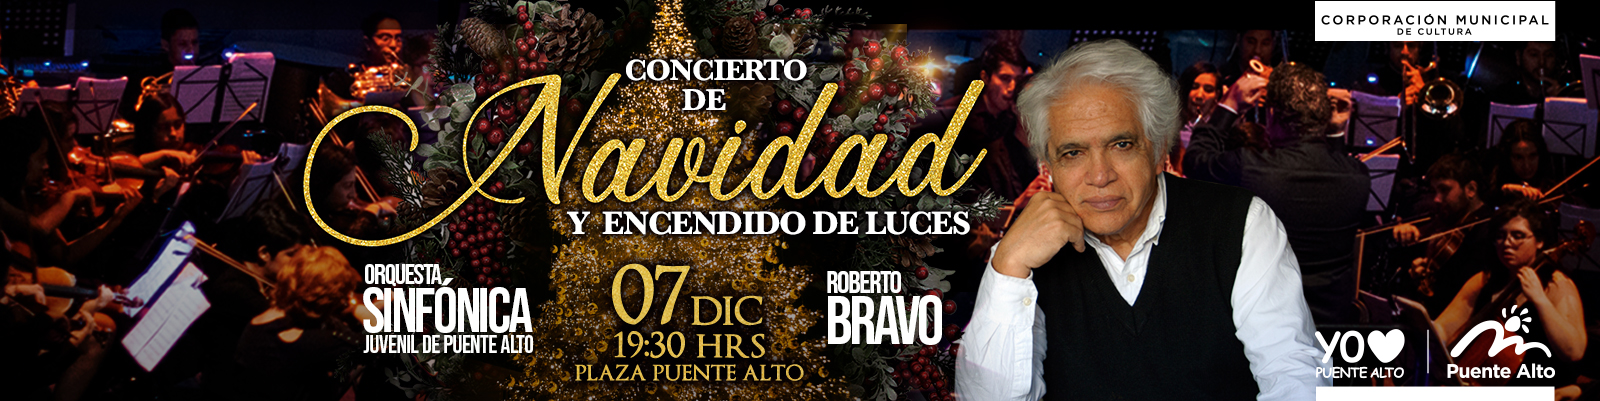 Concierto de Navidad junto a la Orquesta Sinfónica Juvenil de Puente Alto y Roberto Bravo